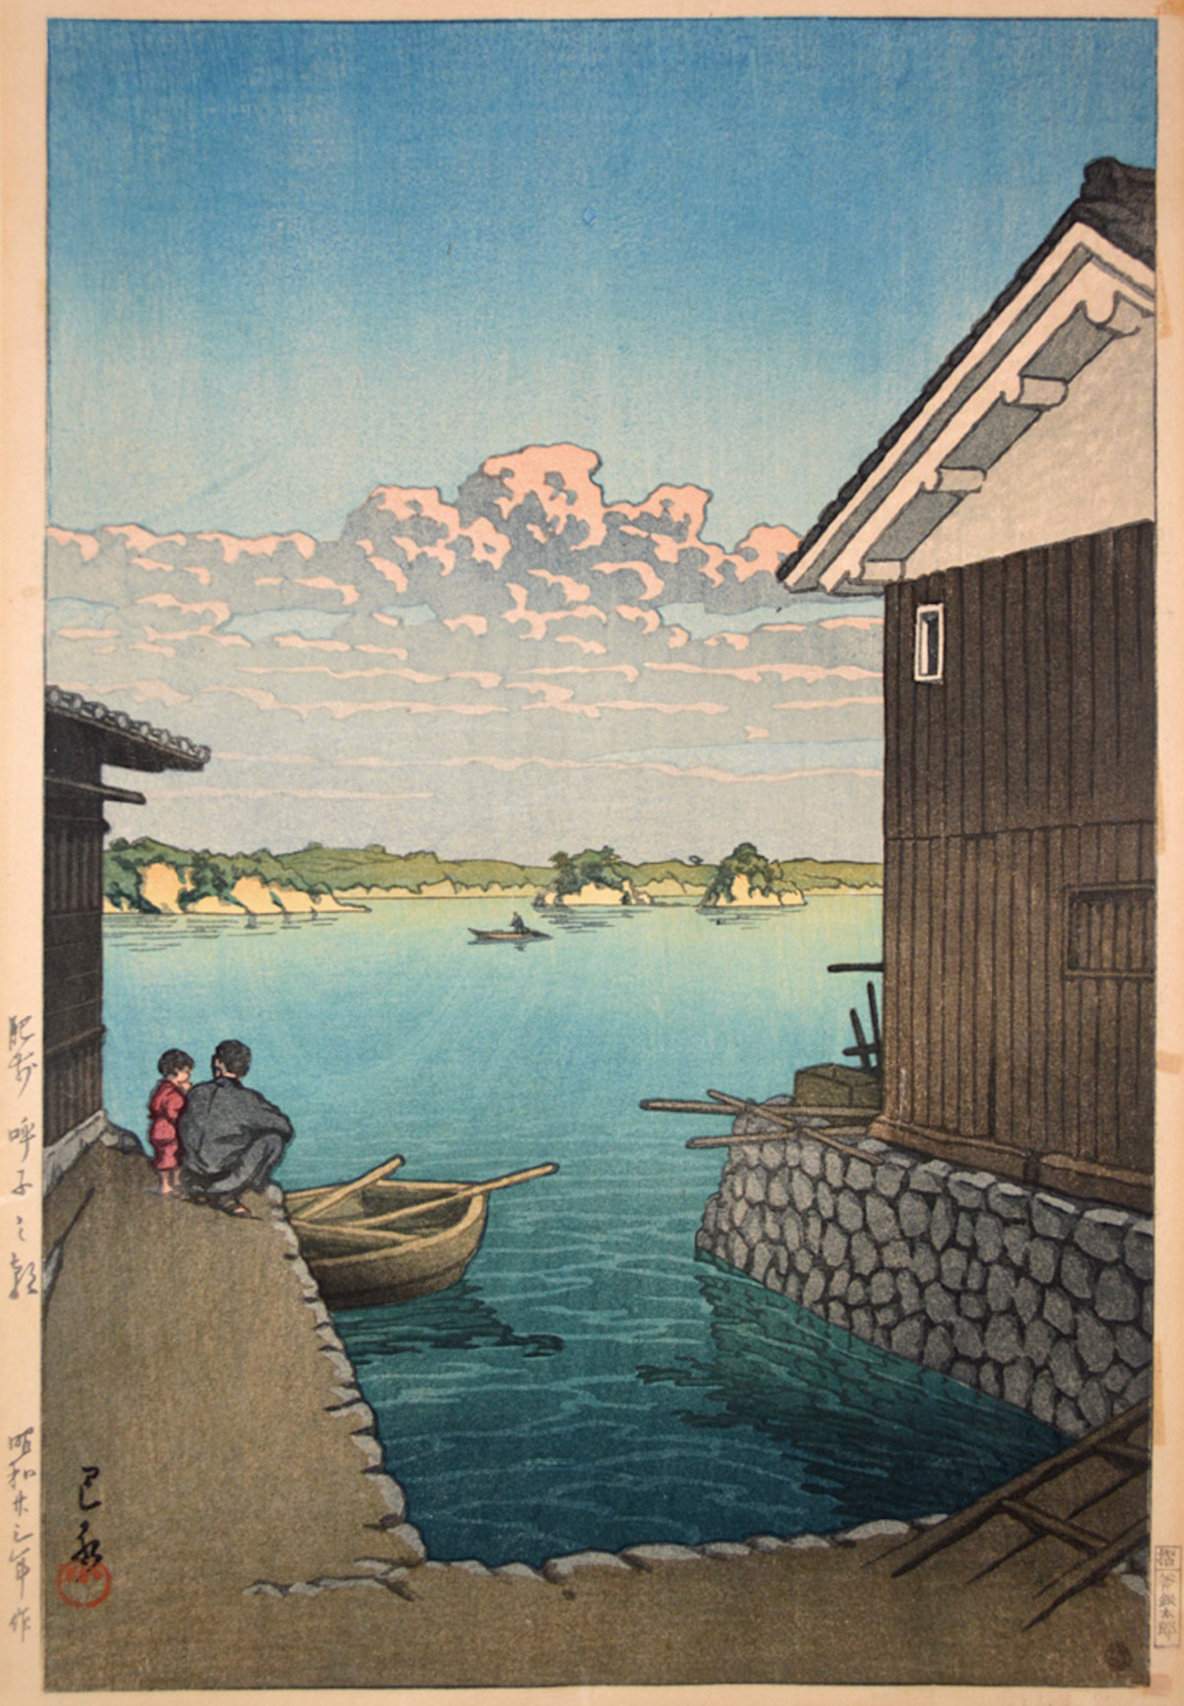 Morning in Yobuko, Hizen - Kawase Hasui Catalogue woodblock print